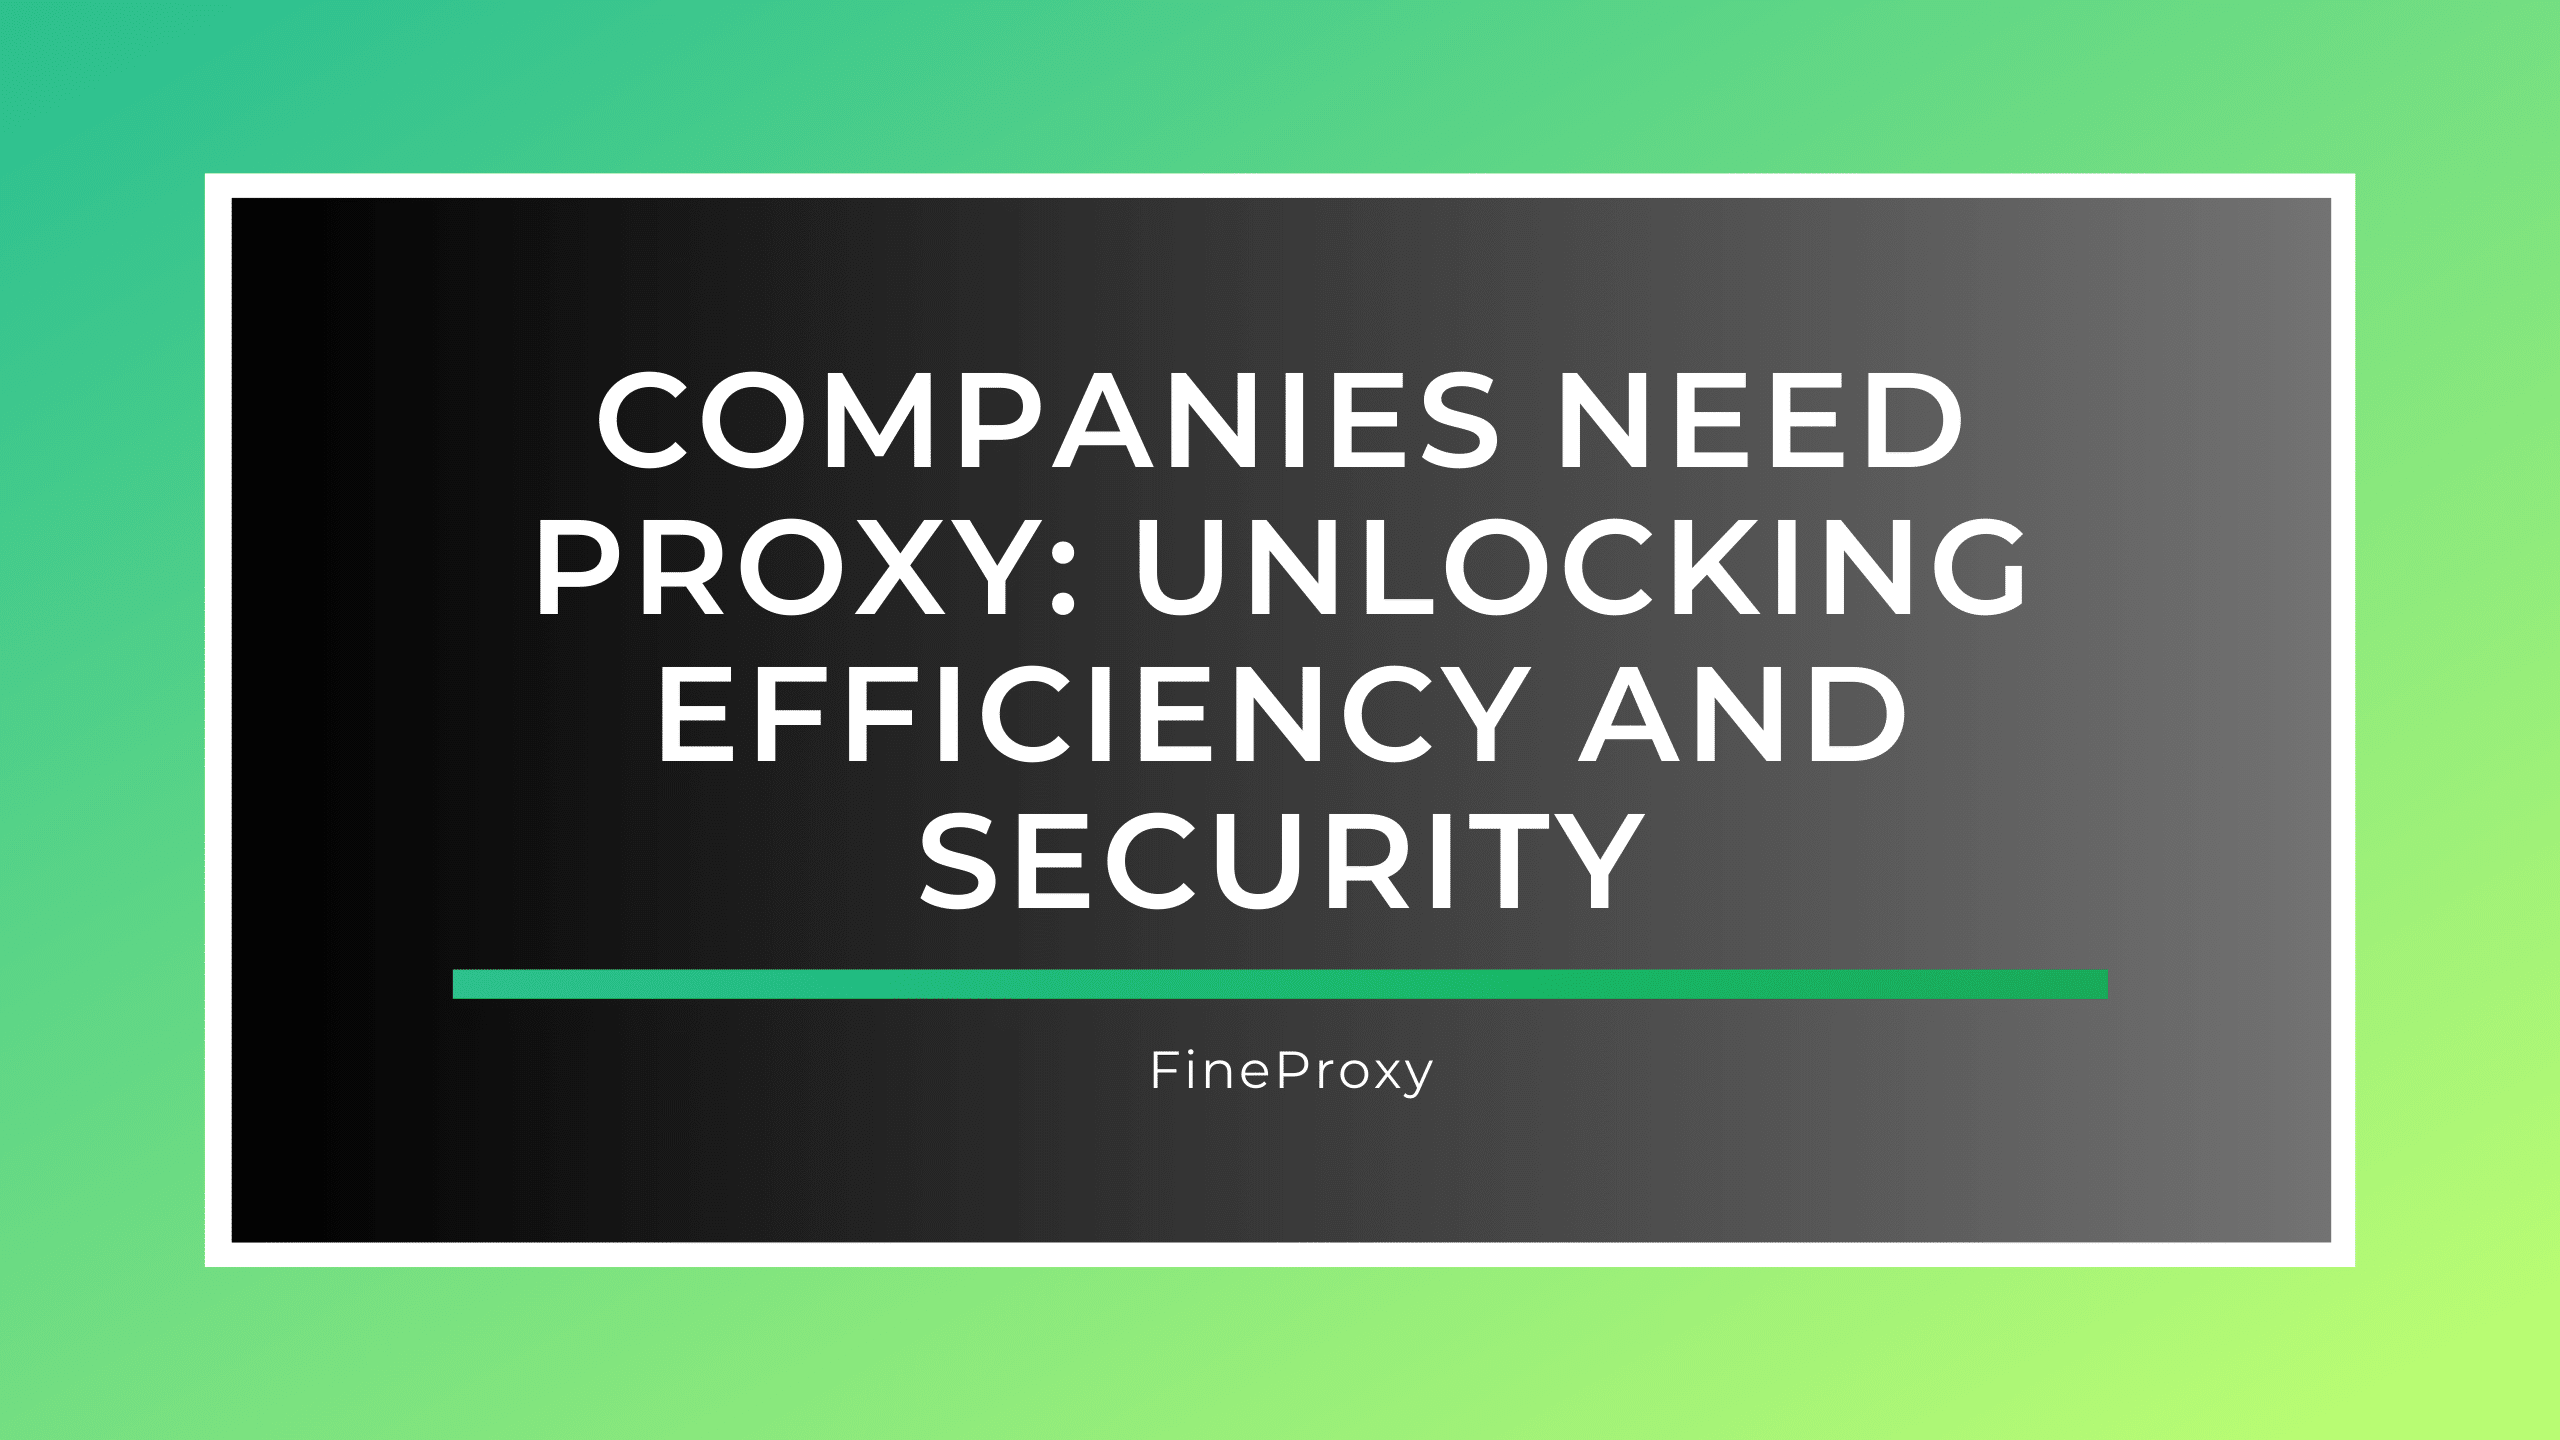 Şirketlerin Proxy'ye İhtiyacı Var: Verimlilik ve Güvenliğin Kilidini Açmak